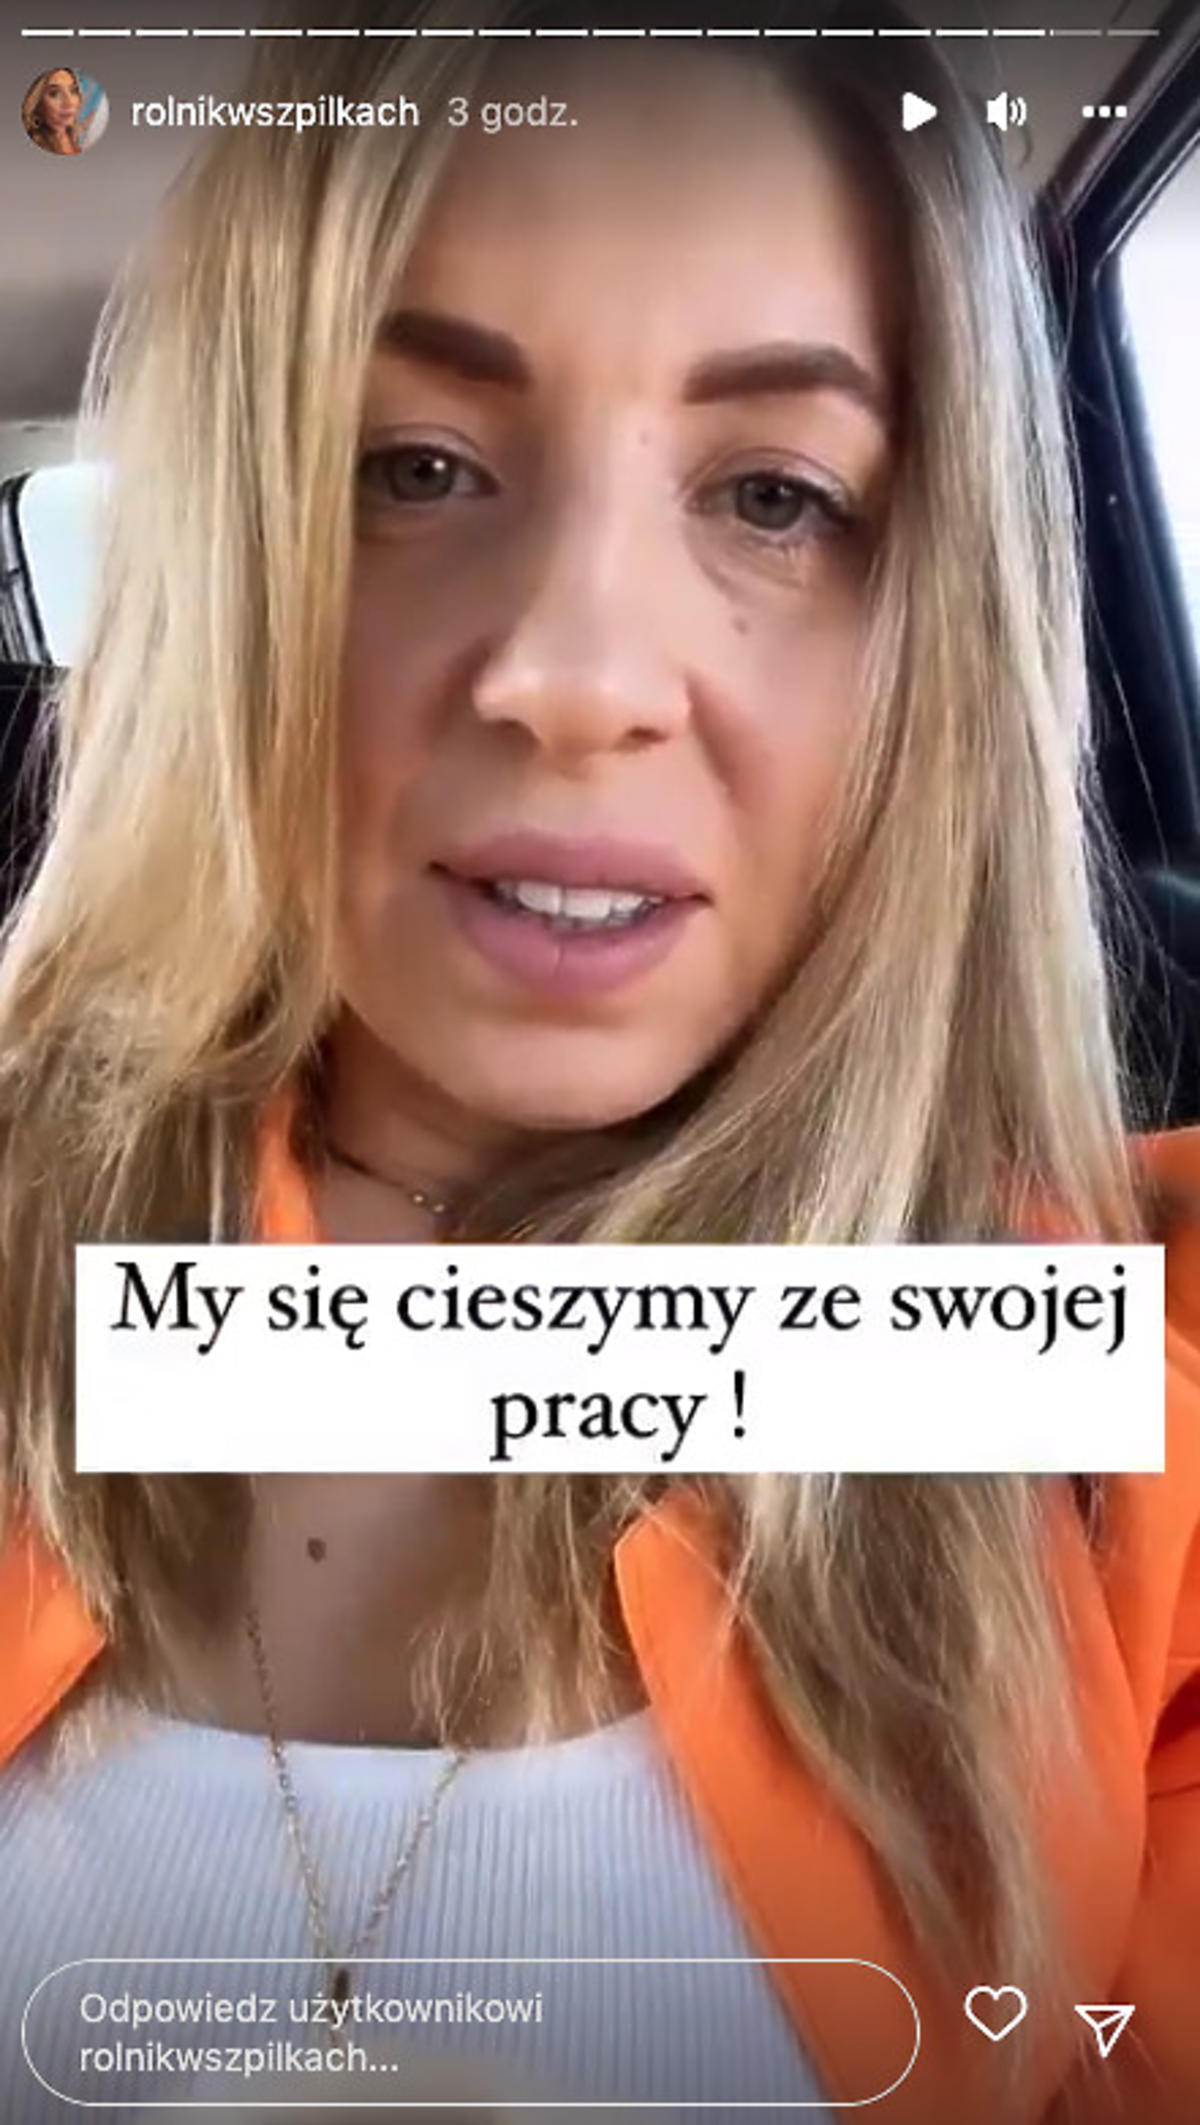 Małgorzata Borysewicz showed fudges